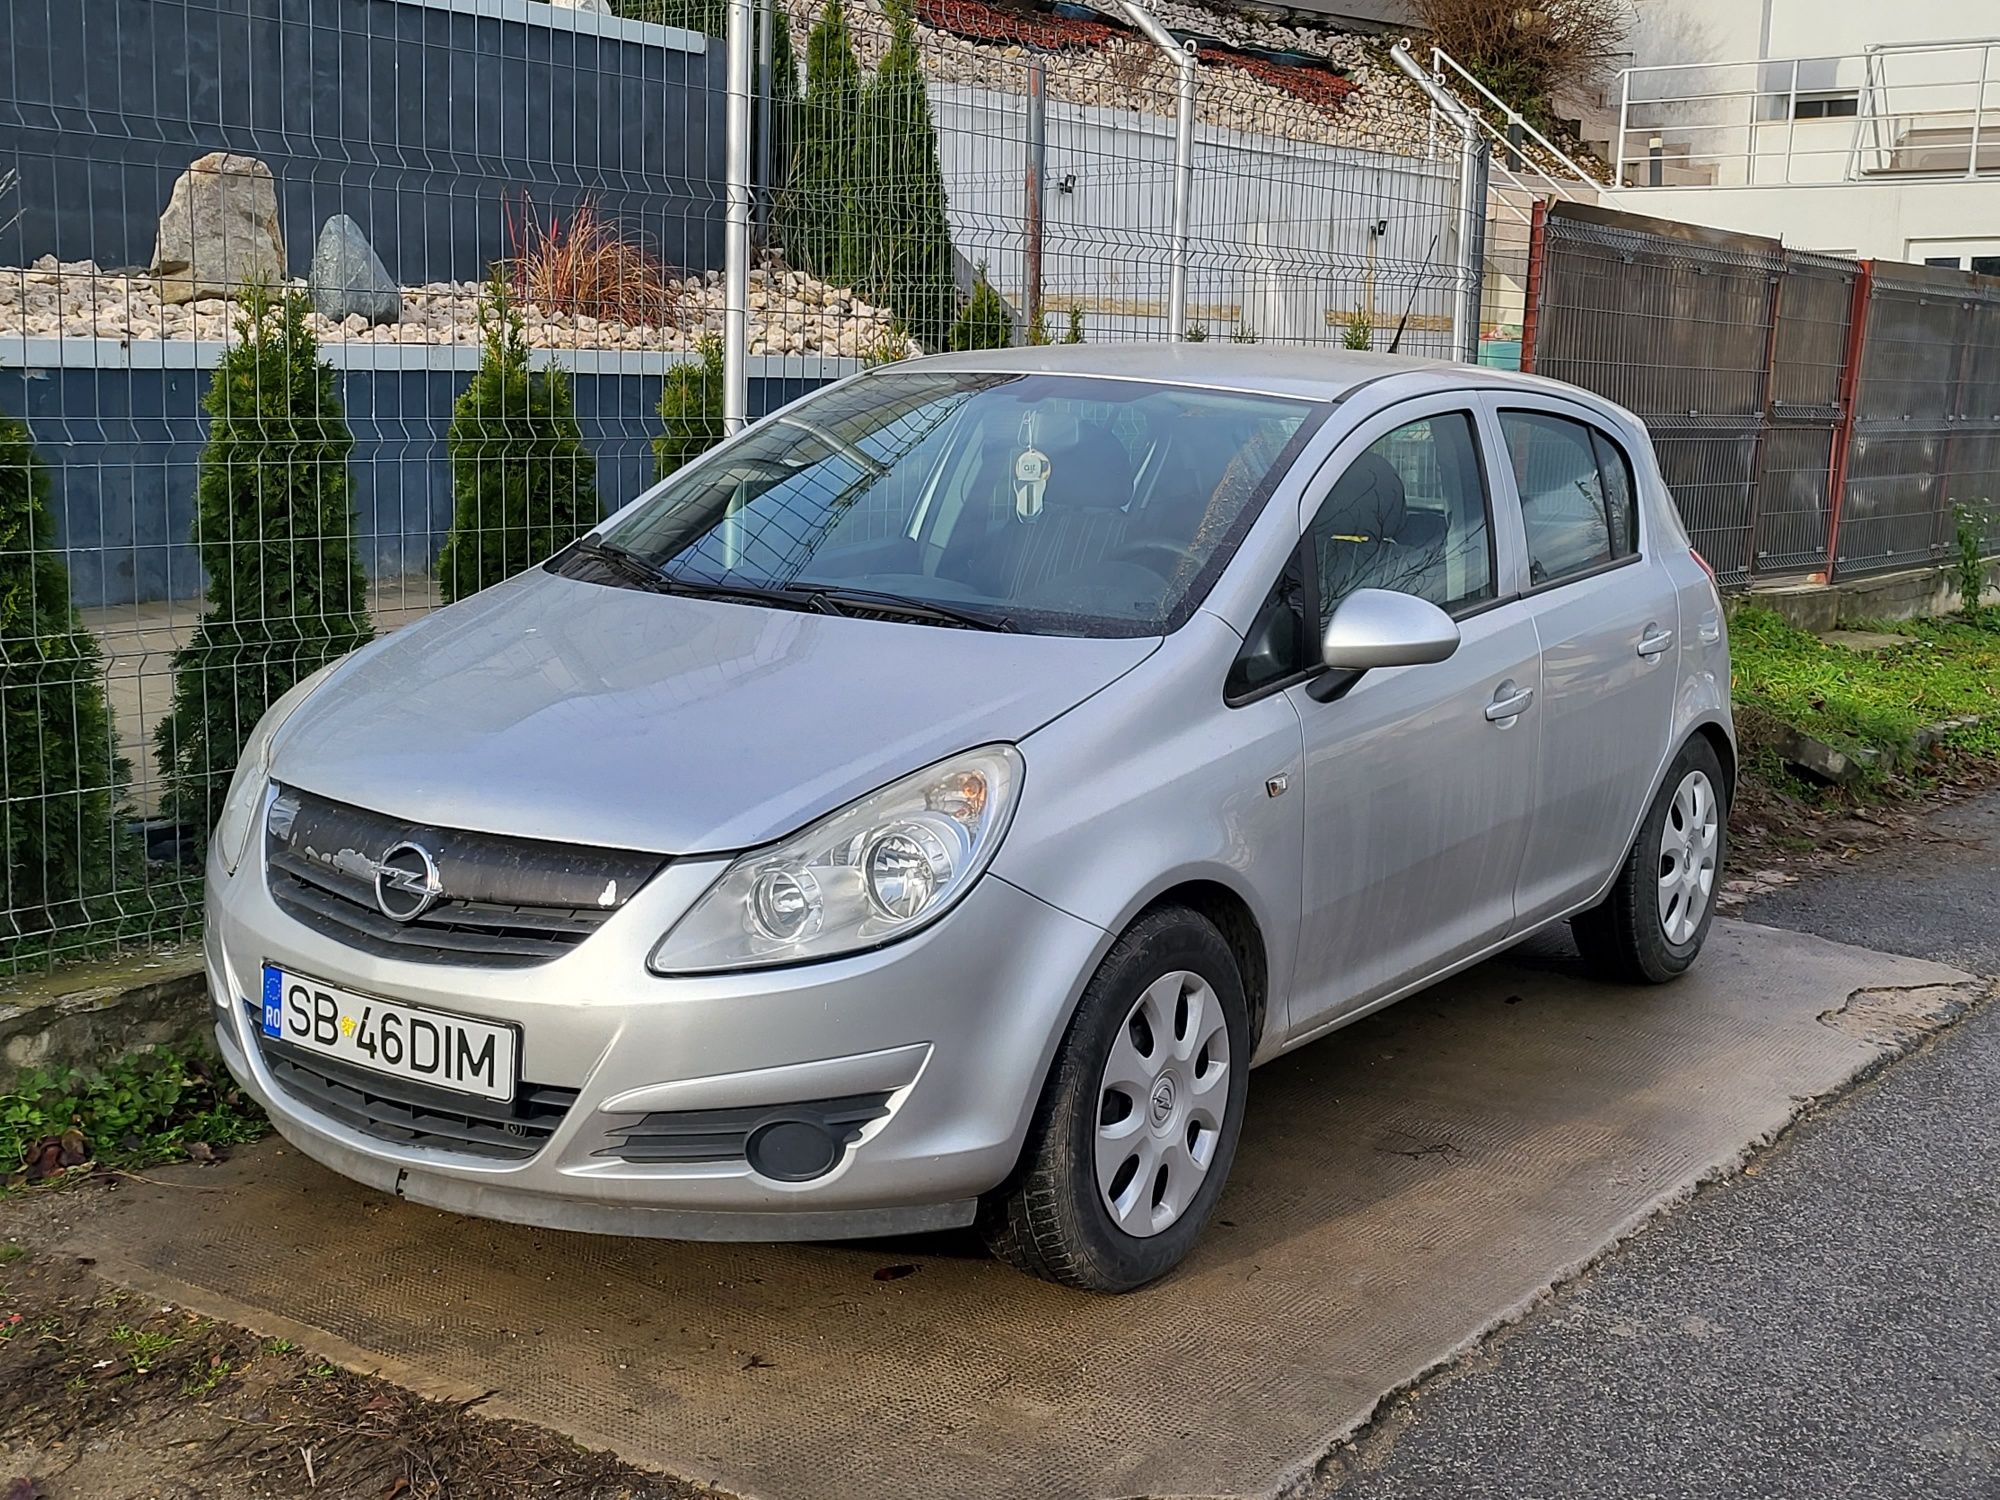 Opel corsa D 1.3 tdci. 2010. Itp 2025